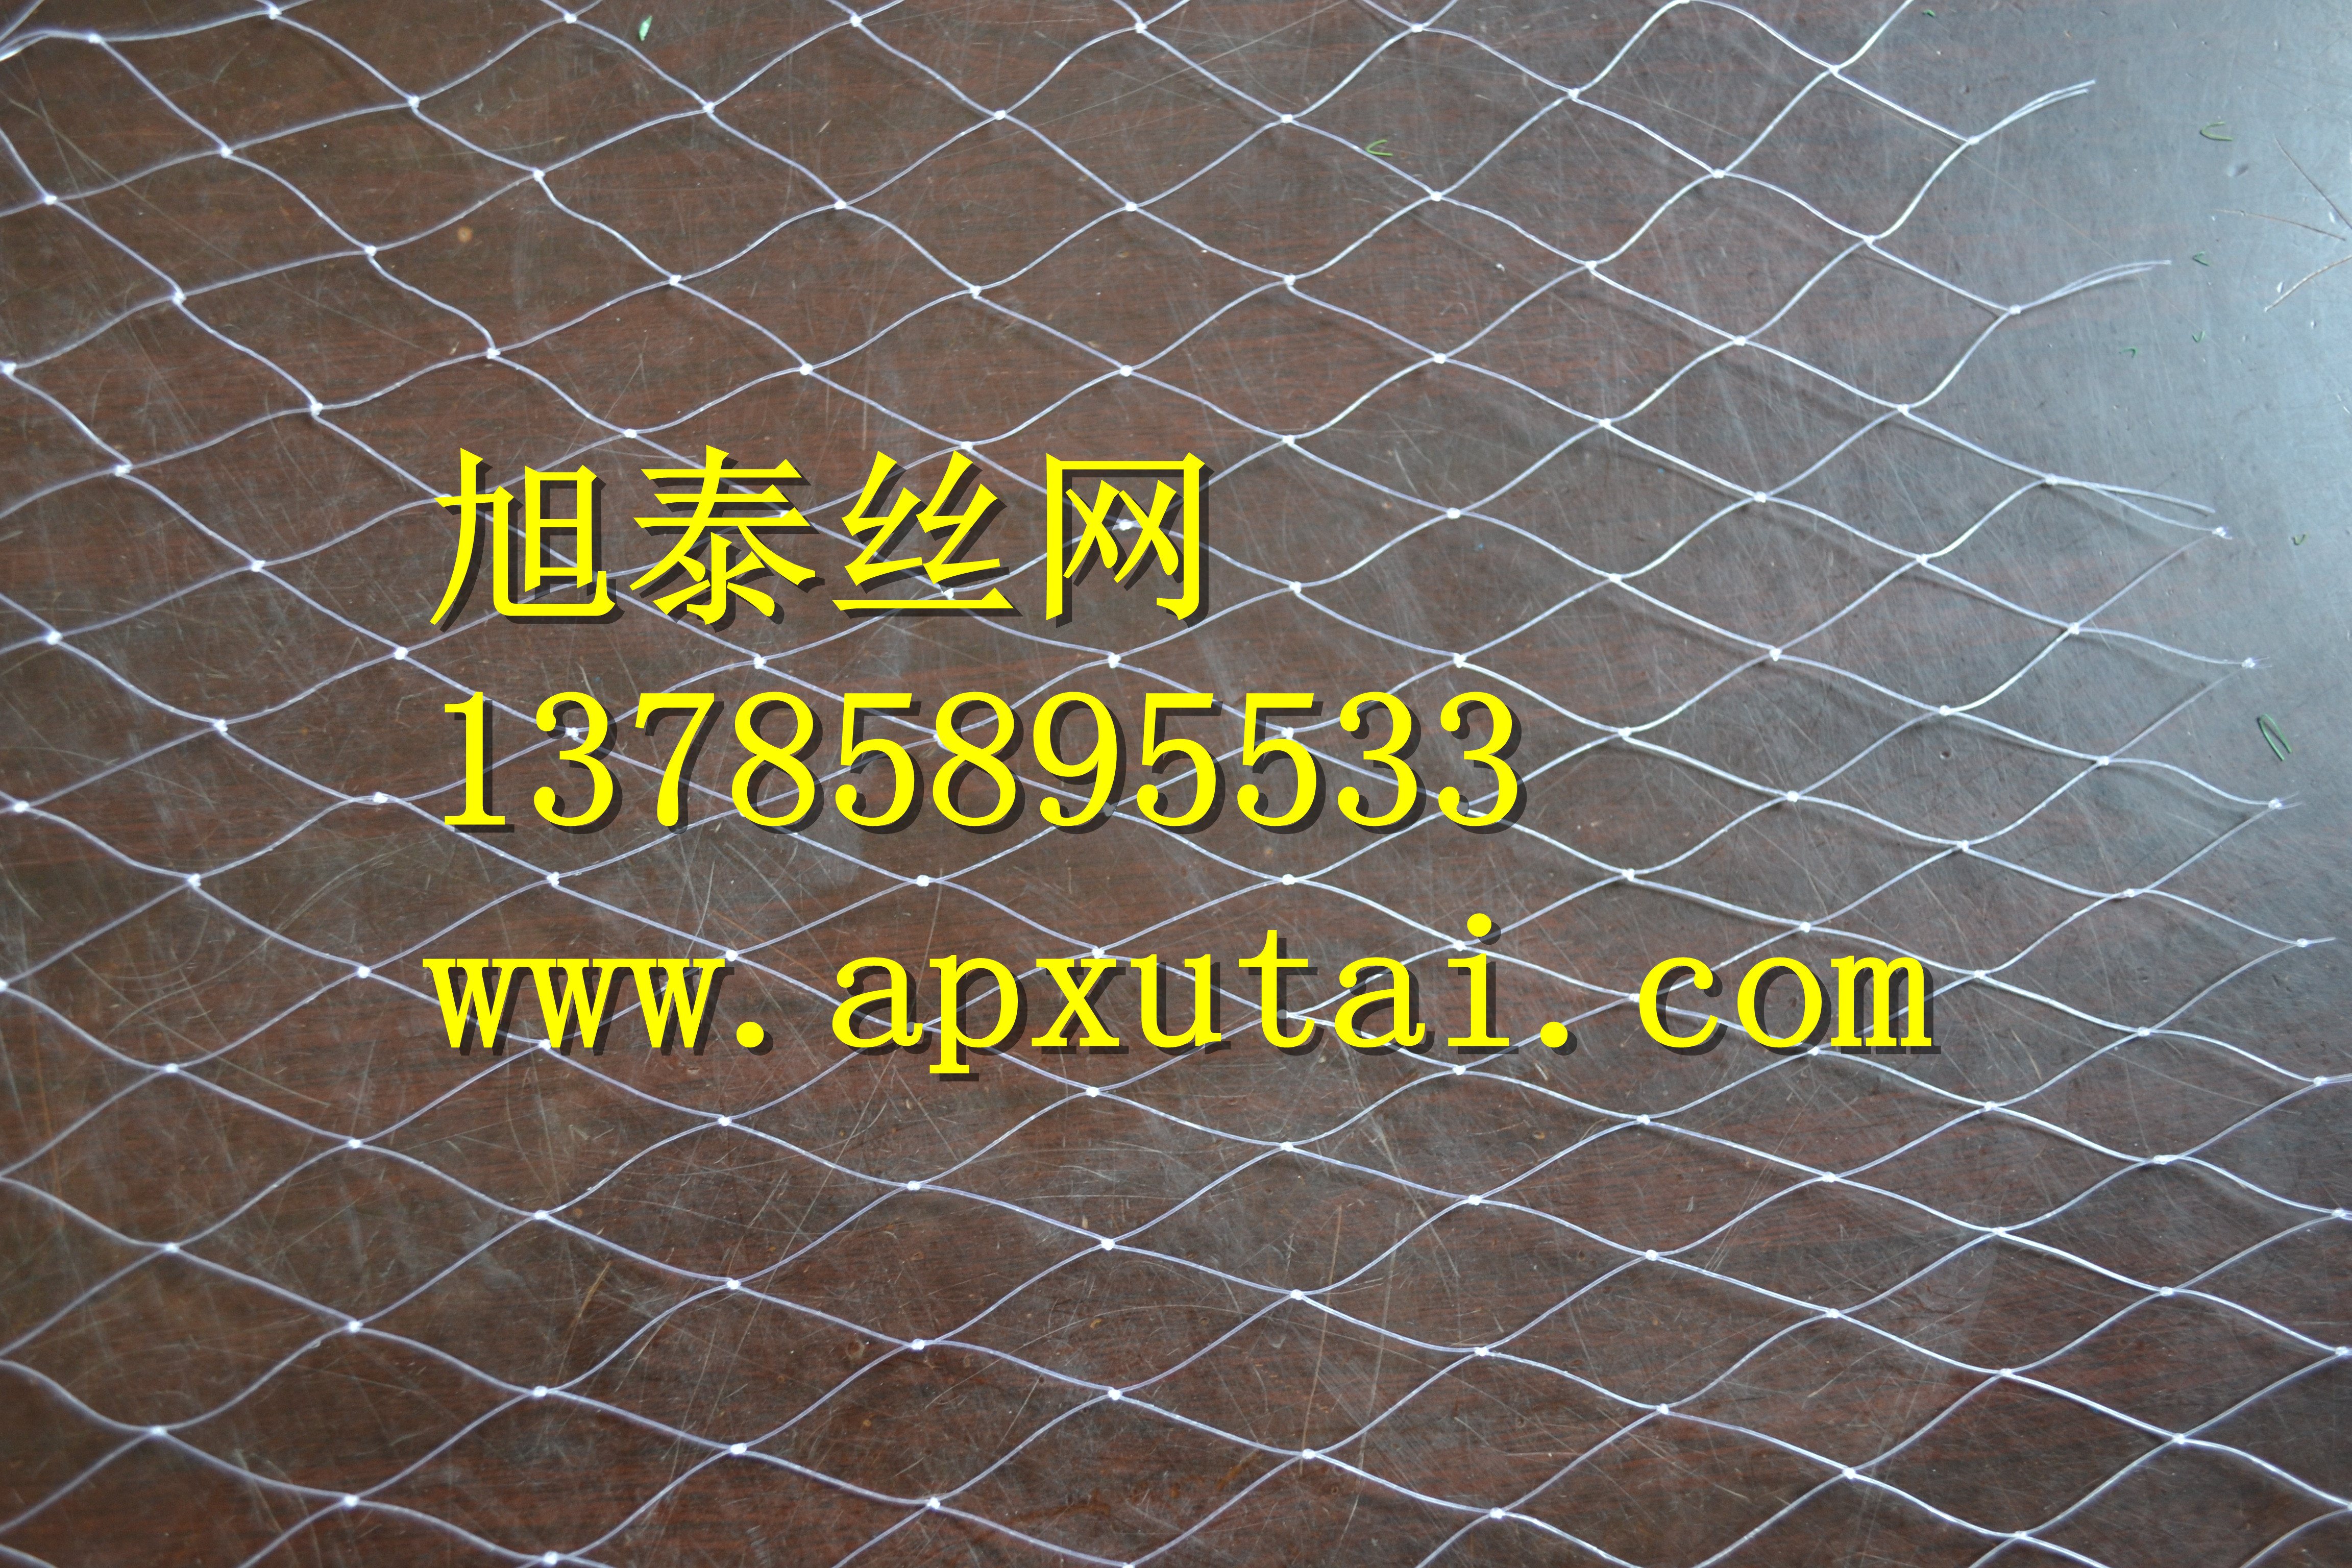 安平旭泰遮阳网厂是一家专业生产供应防鸟网的生产厂家图片